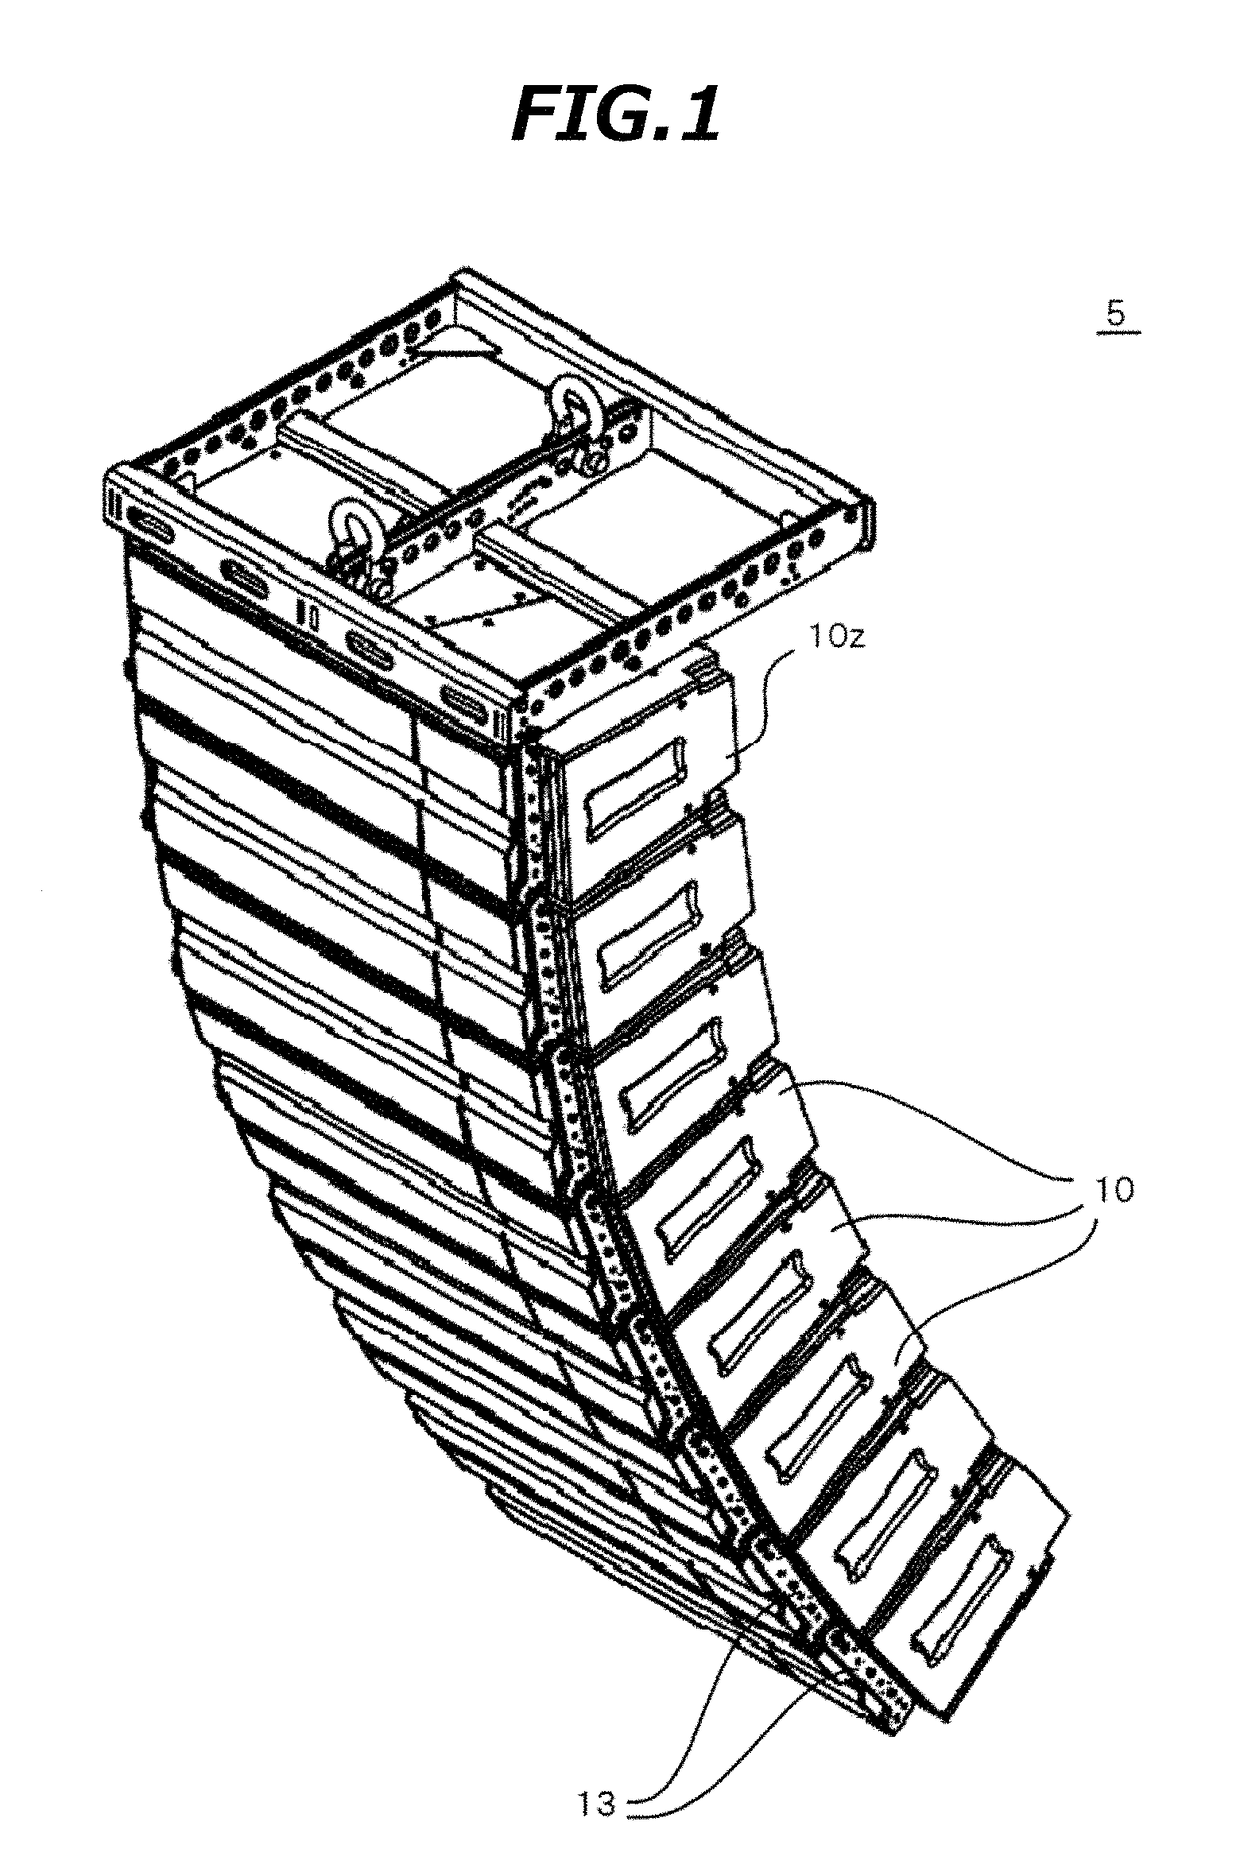 Speaker apparatus